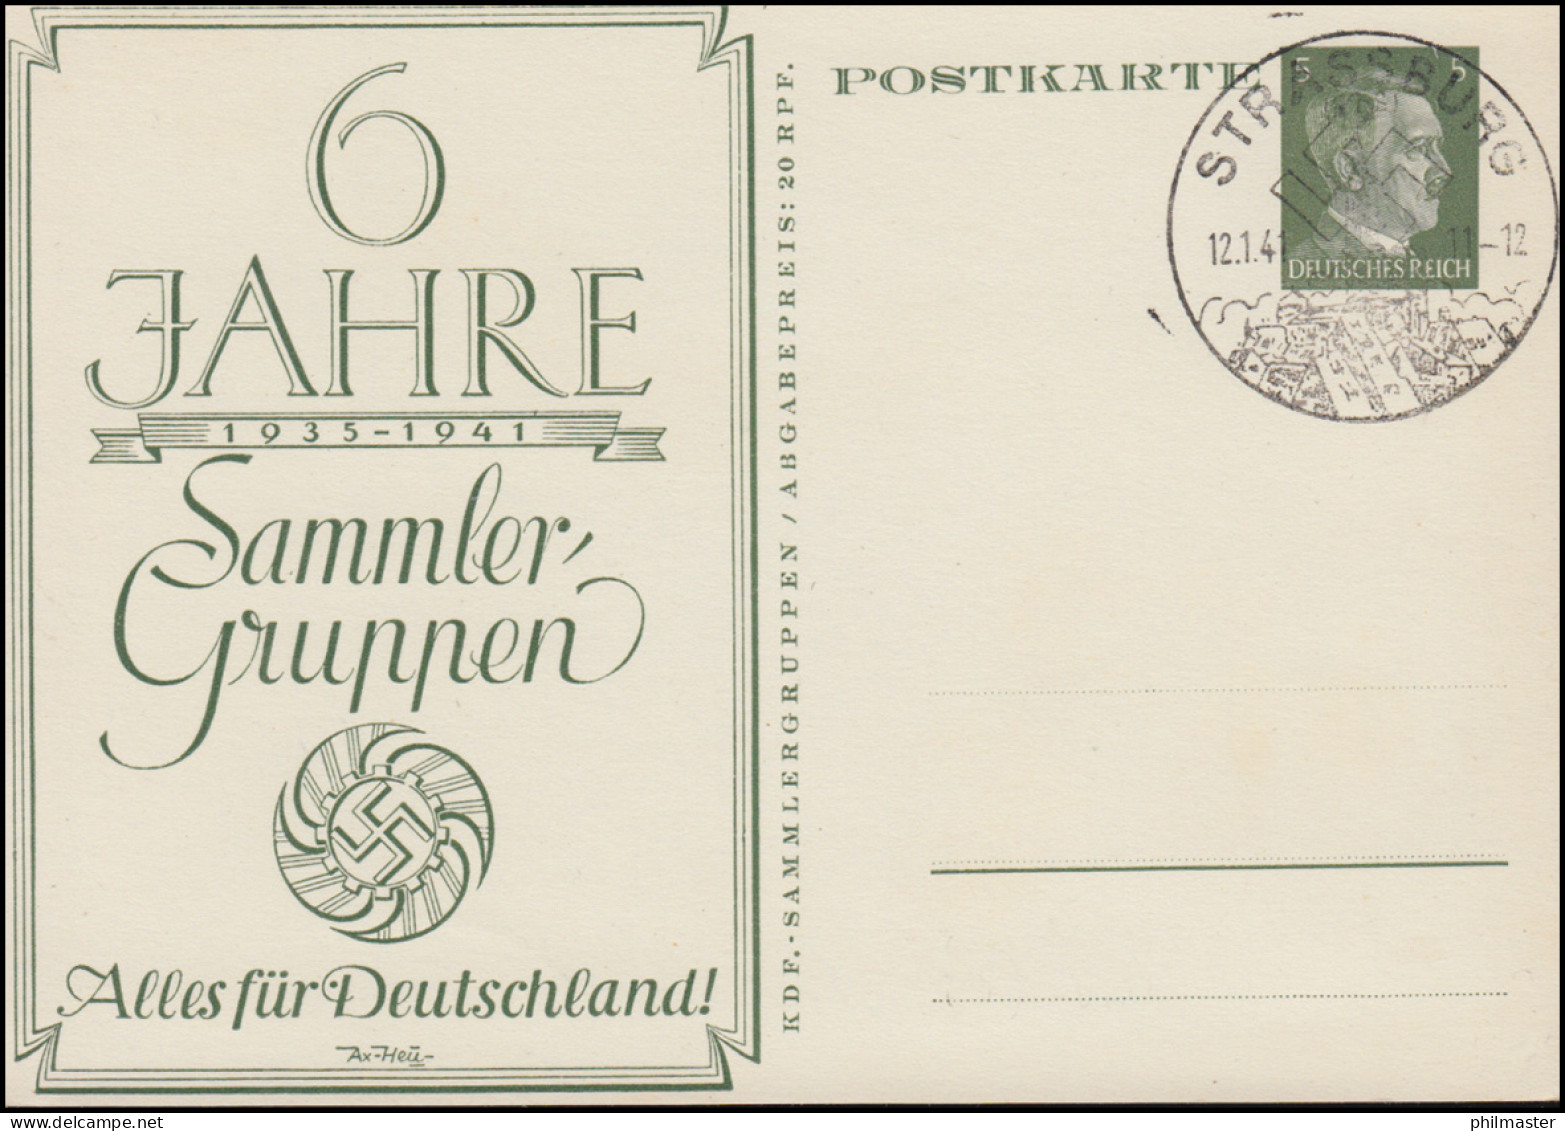 P 154 Alles Für Deutschland 60 Jahre Sammler-Guppen SSt STRASSBURG 12.1.1941 - Filatelistische Tentoonstellingen